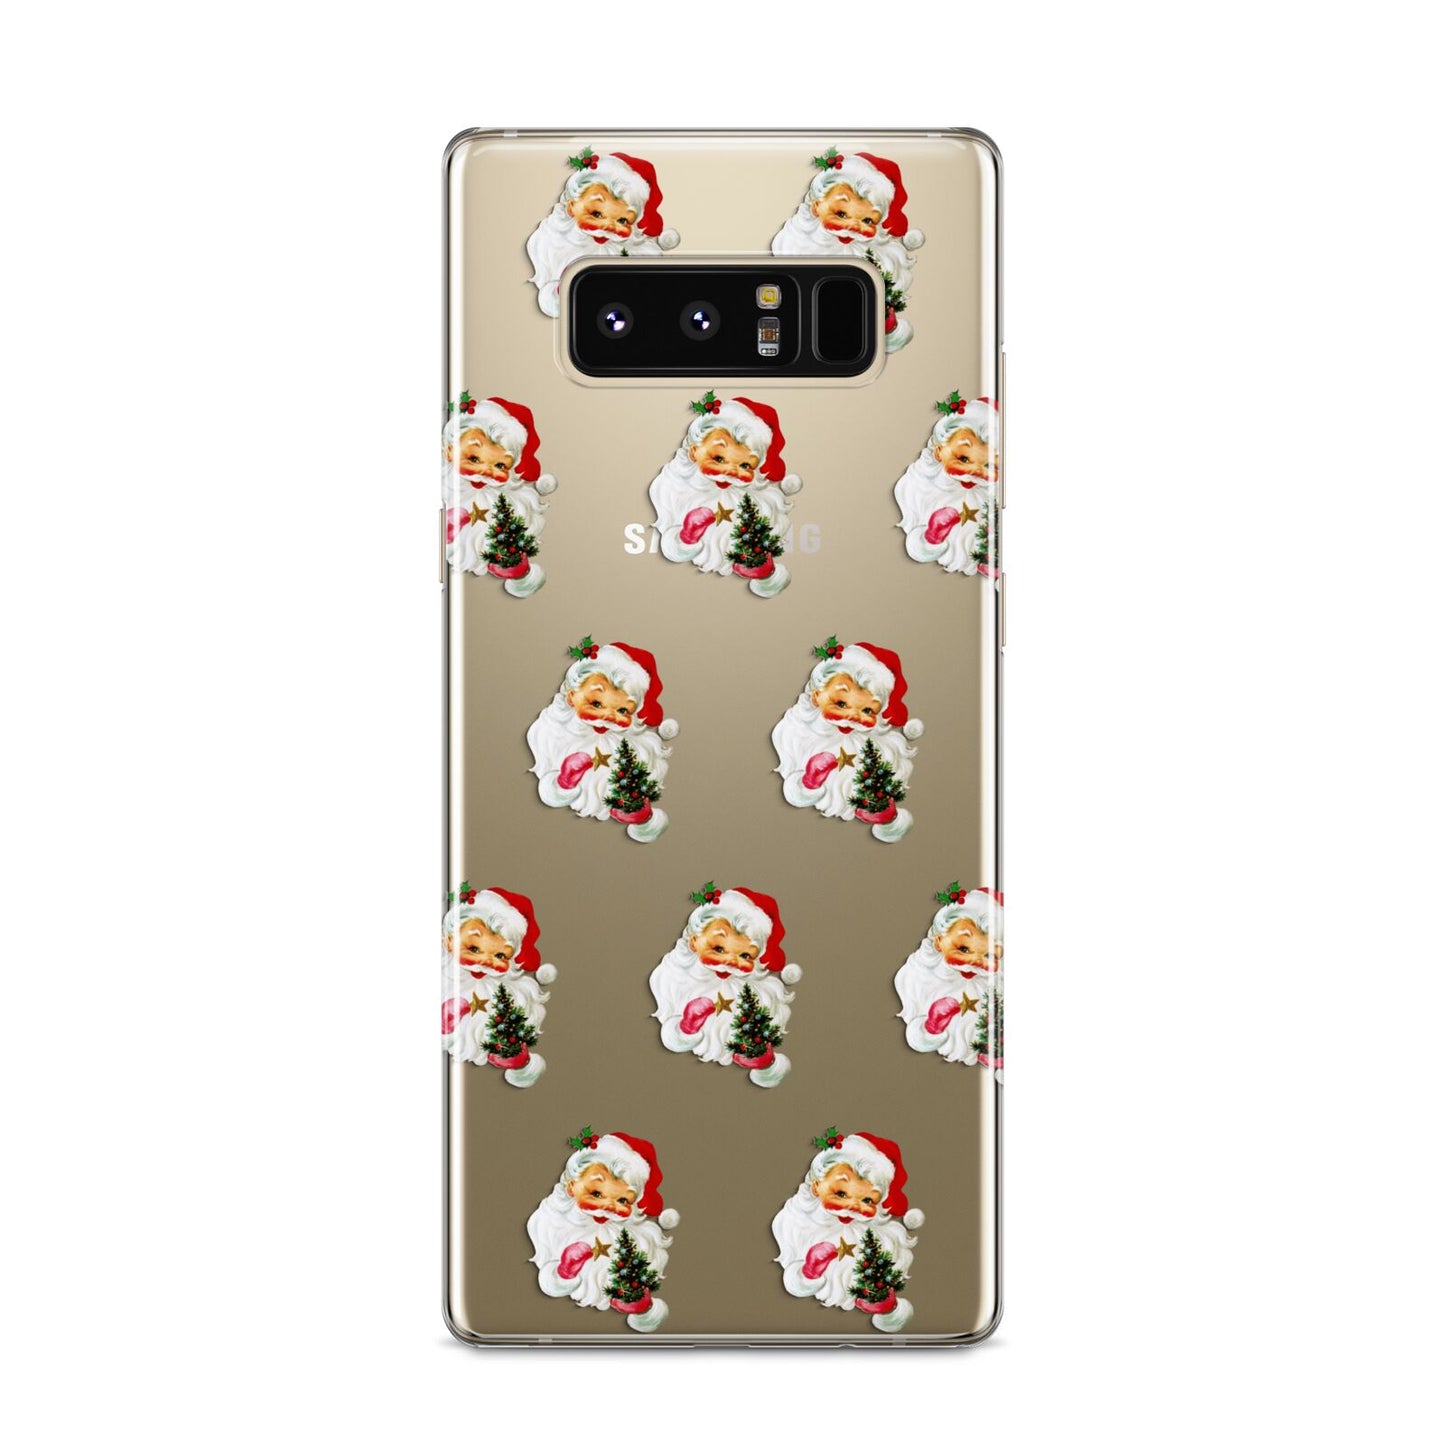 Retro Santa Face Samsung Galaxy S8 Case